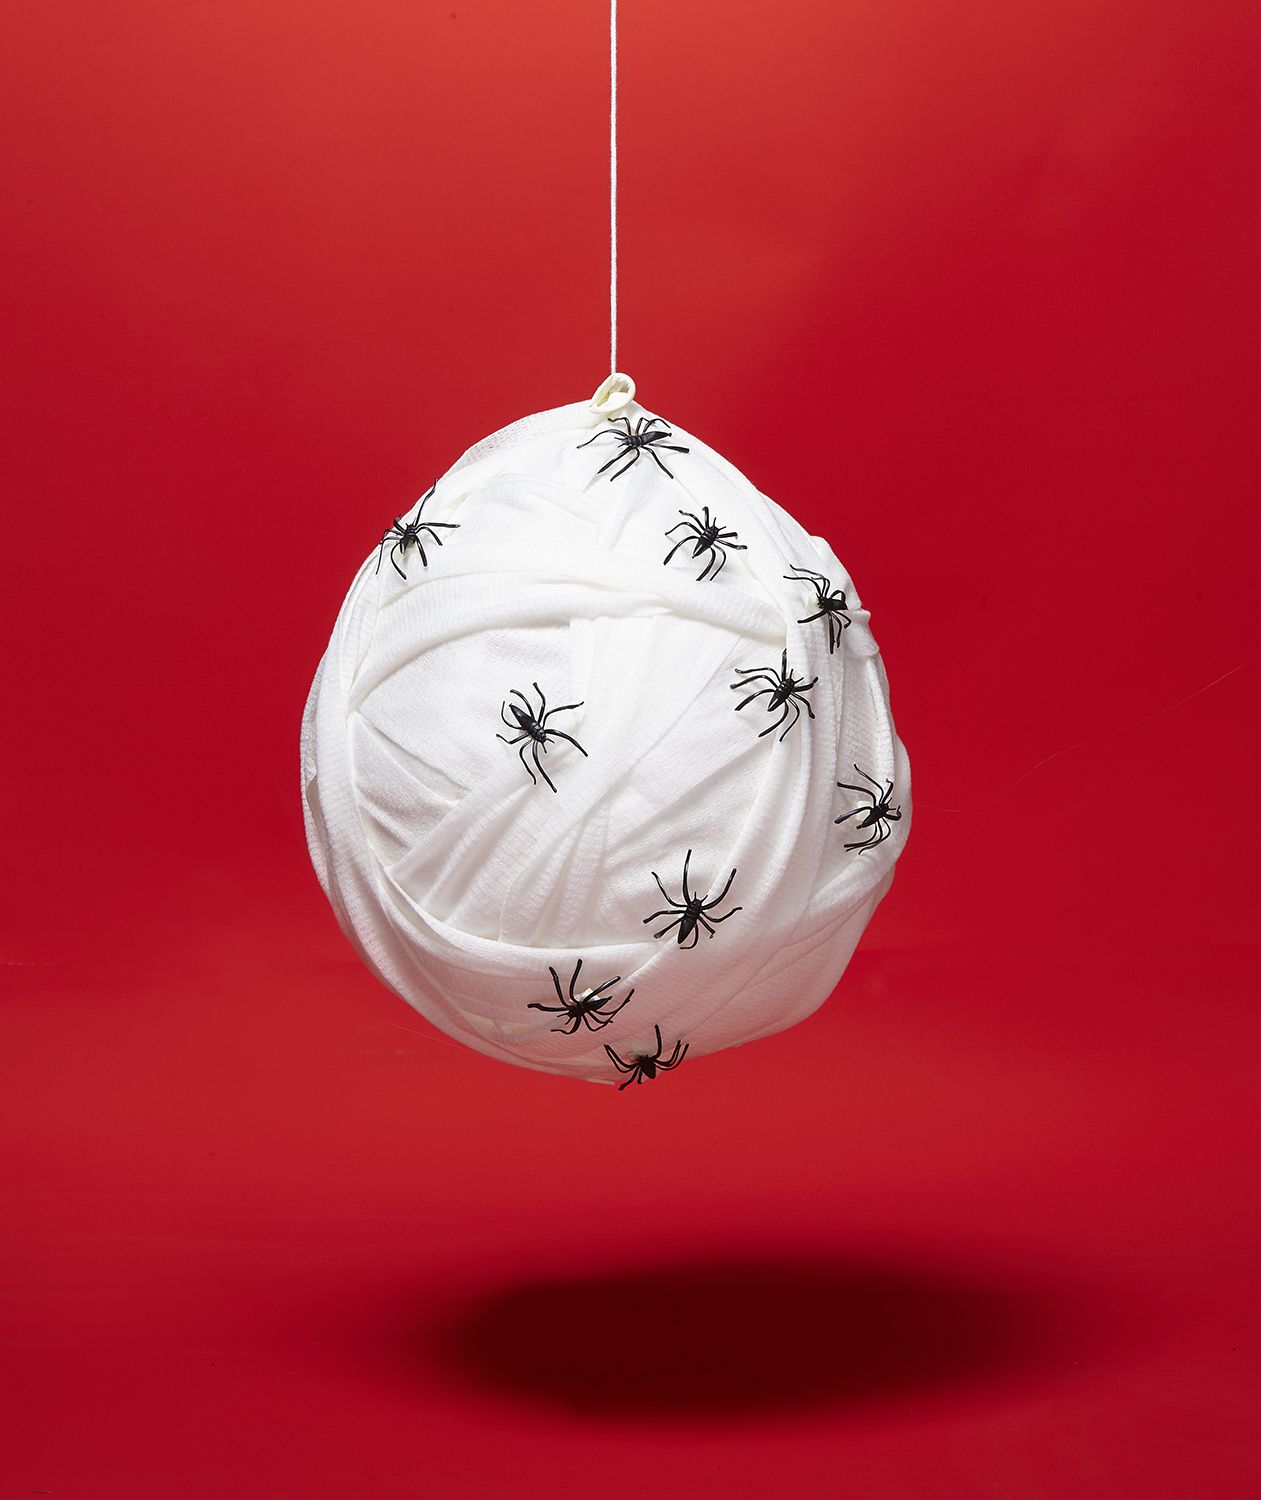 DIY Halloween dekoráció ötletek: Pókfészek rizzsel töltött léggömbből, gézbe csomagolva